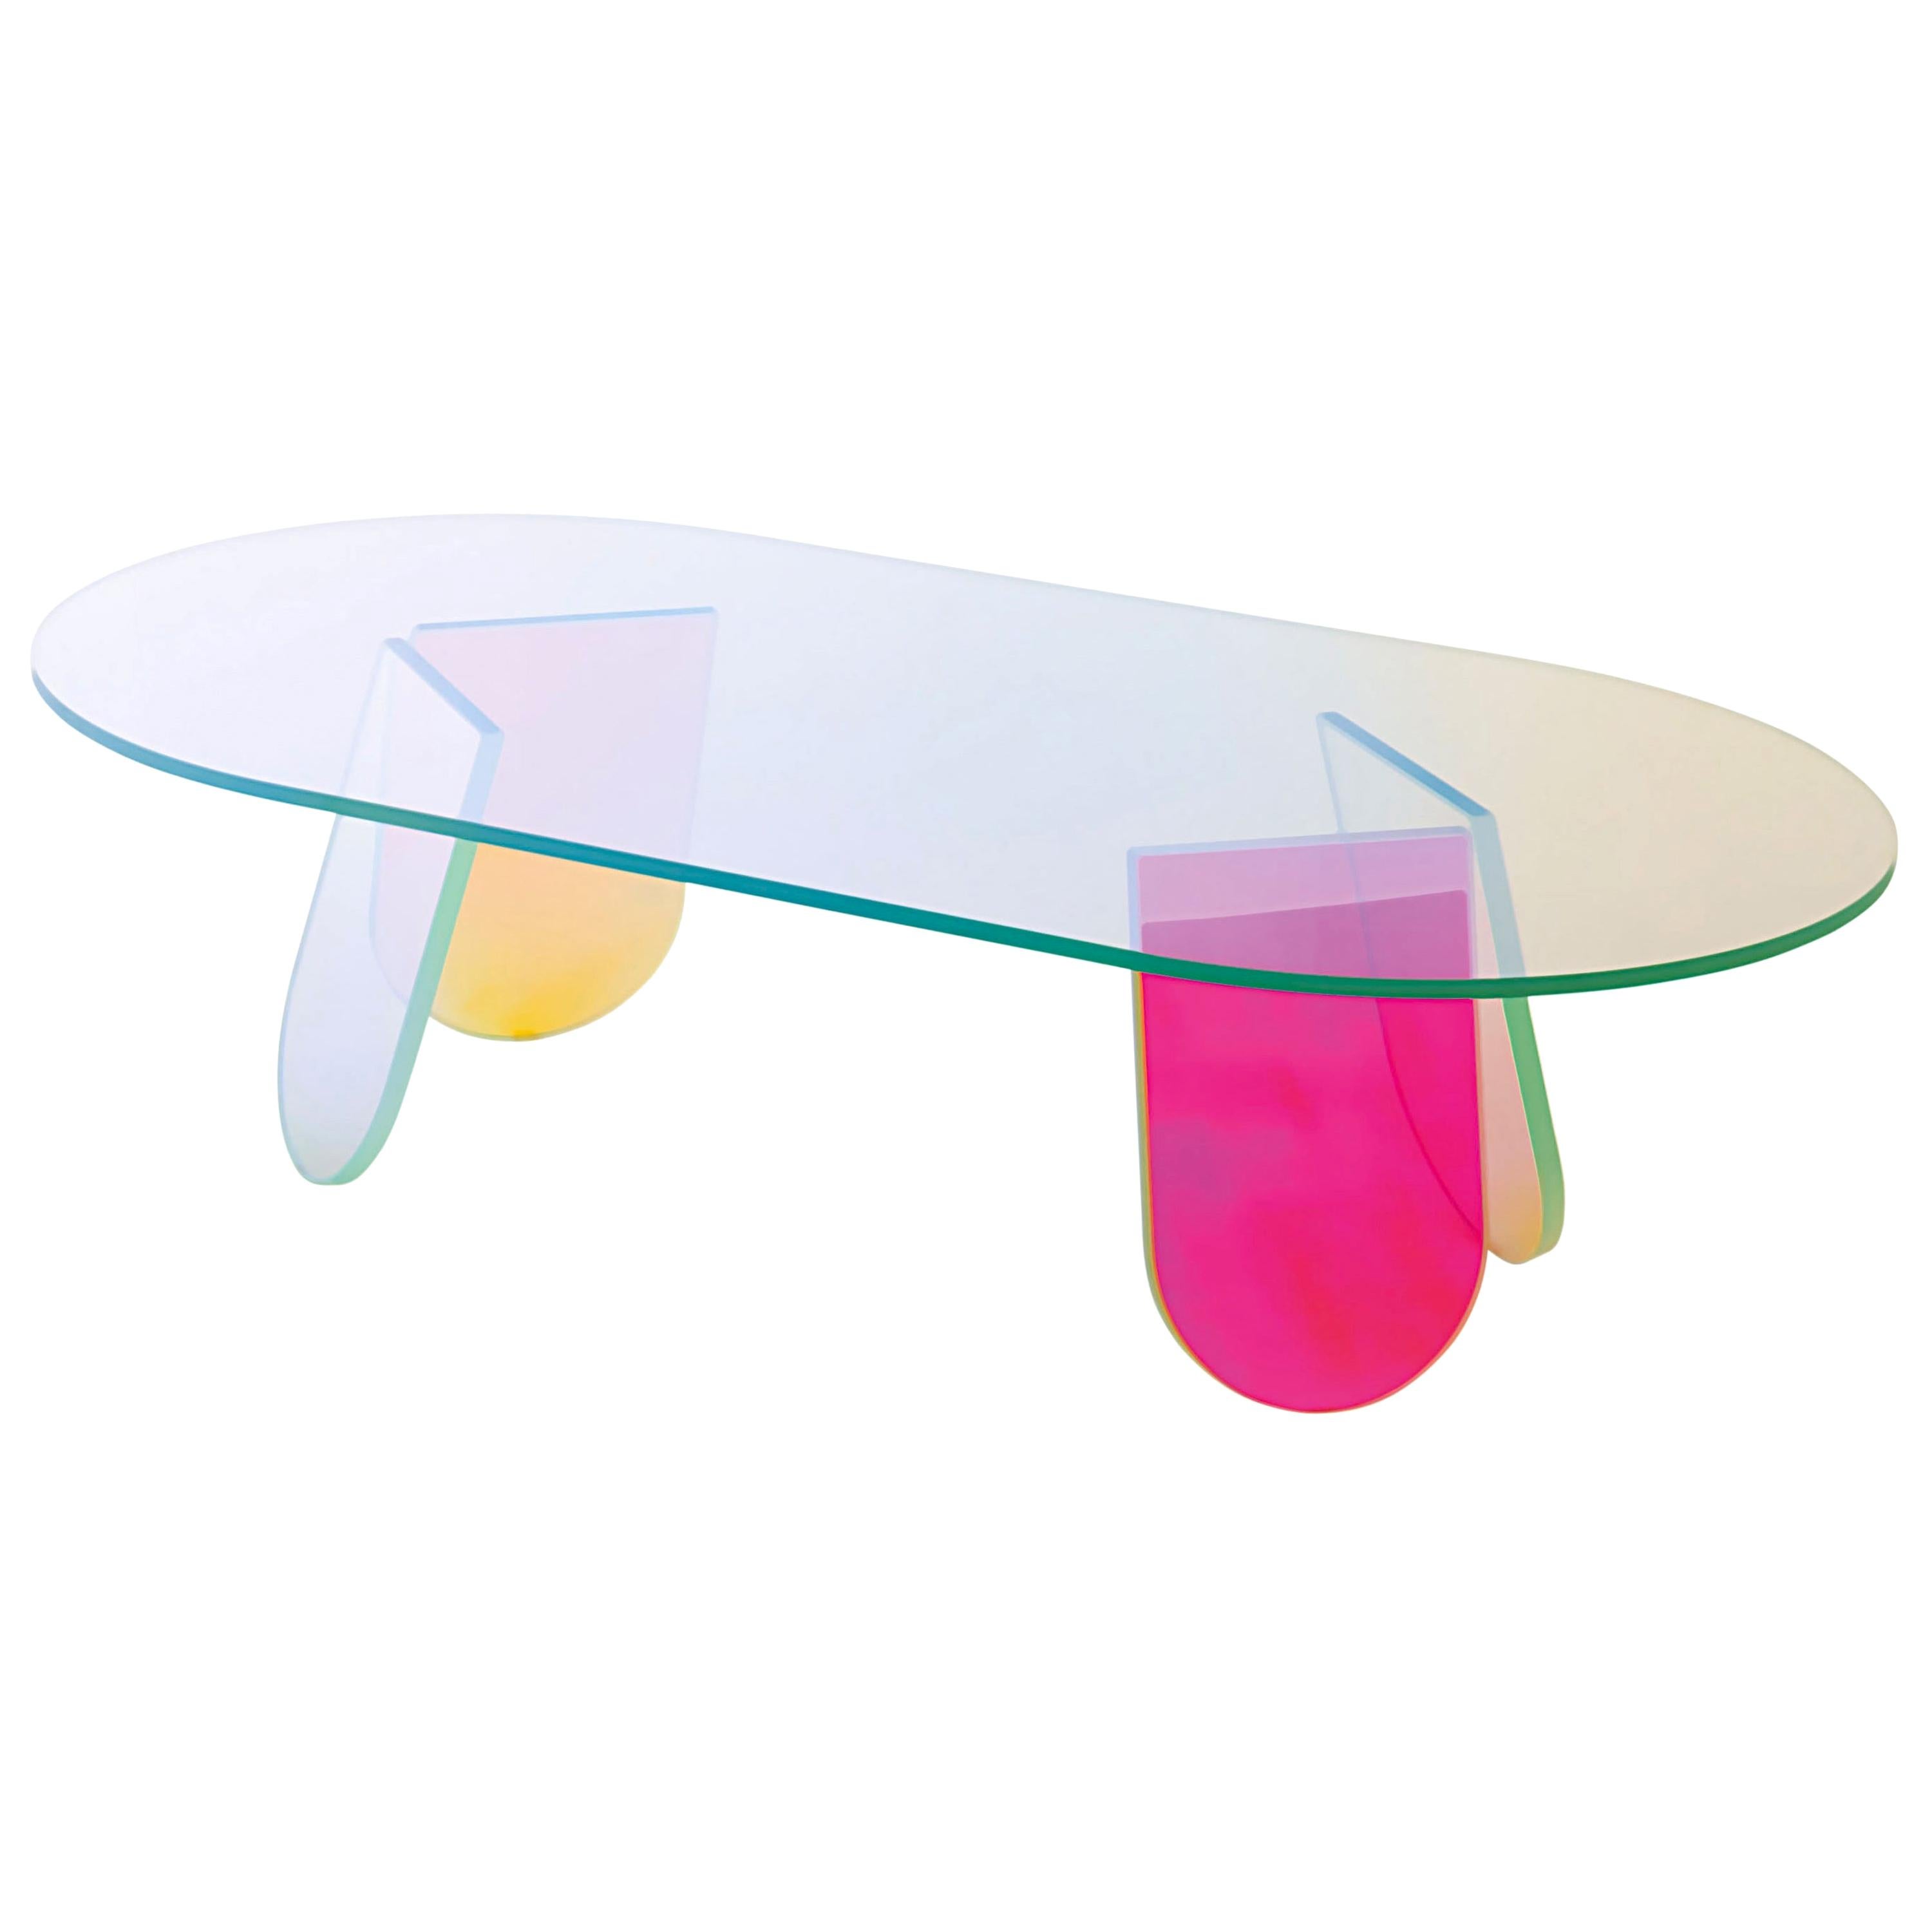 Petite table basse ovale chatoyante, par Patricia Urquiola pour Glas Italia, EN STOCK